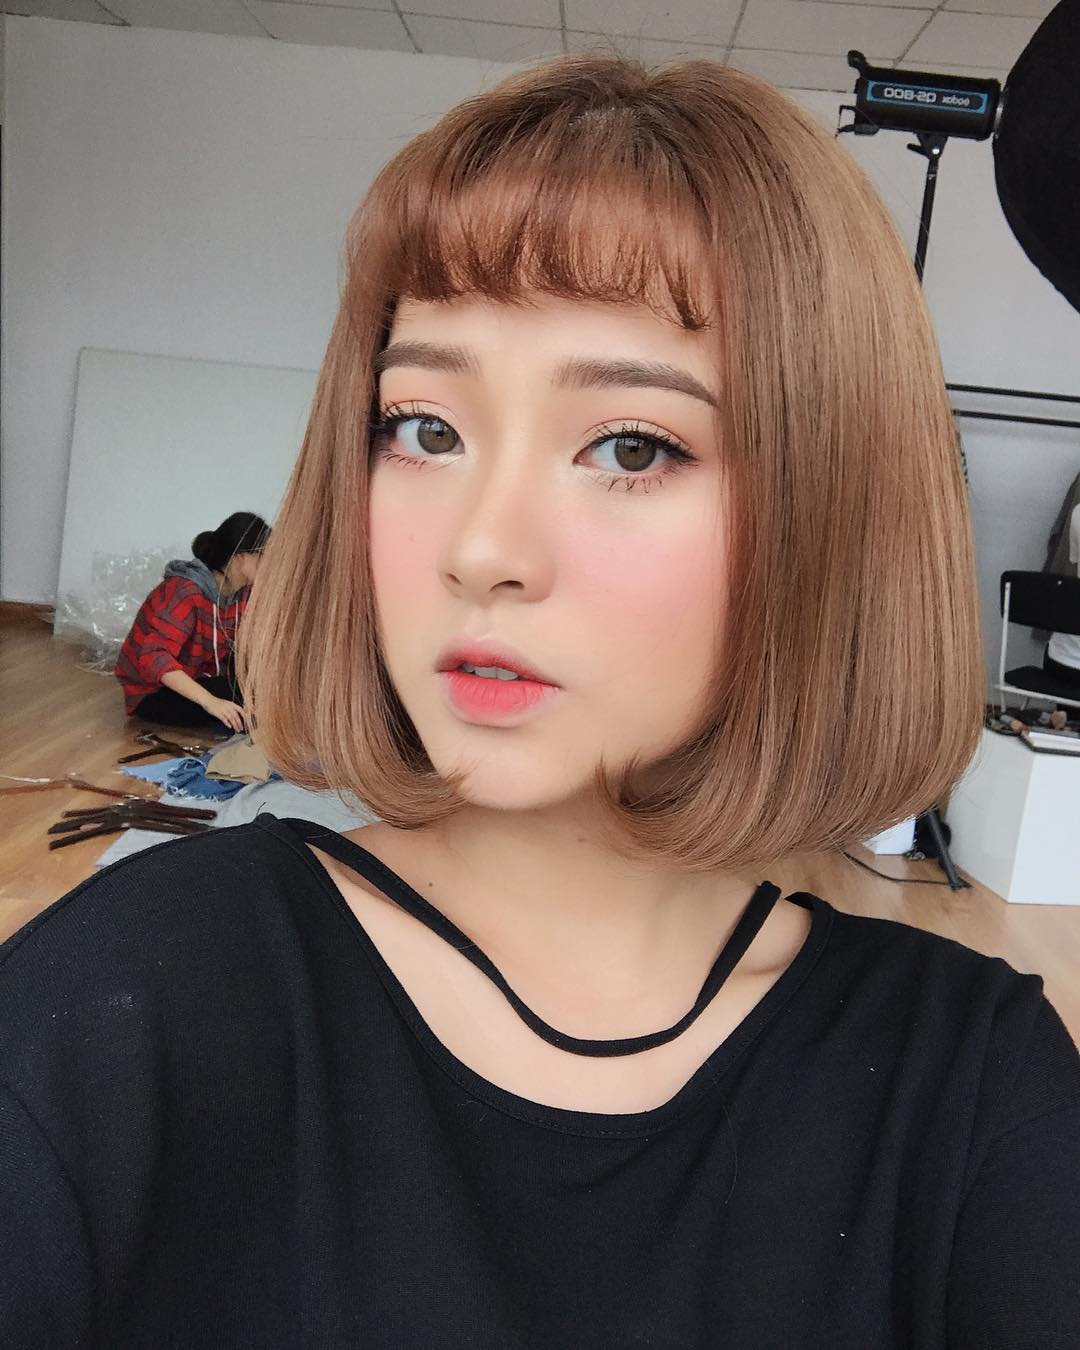 Xinh là một chuyện, các hot girl châu Á còn chăm áp dụng 5 bí kíp makeup này để có ảnh selfie thật ảo - Ảnh 3.